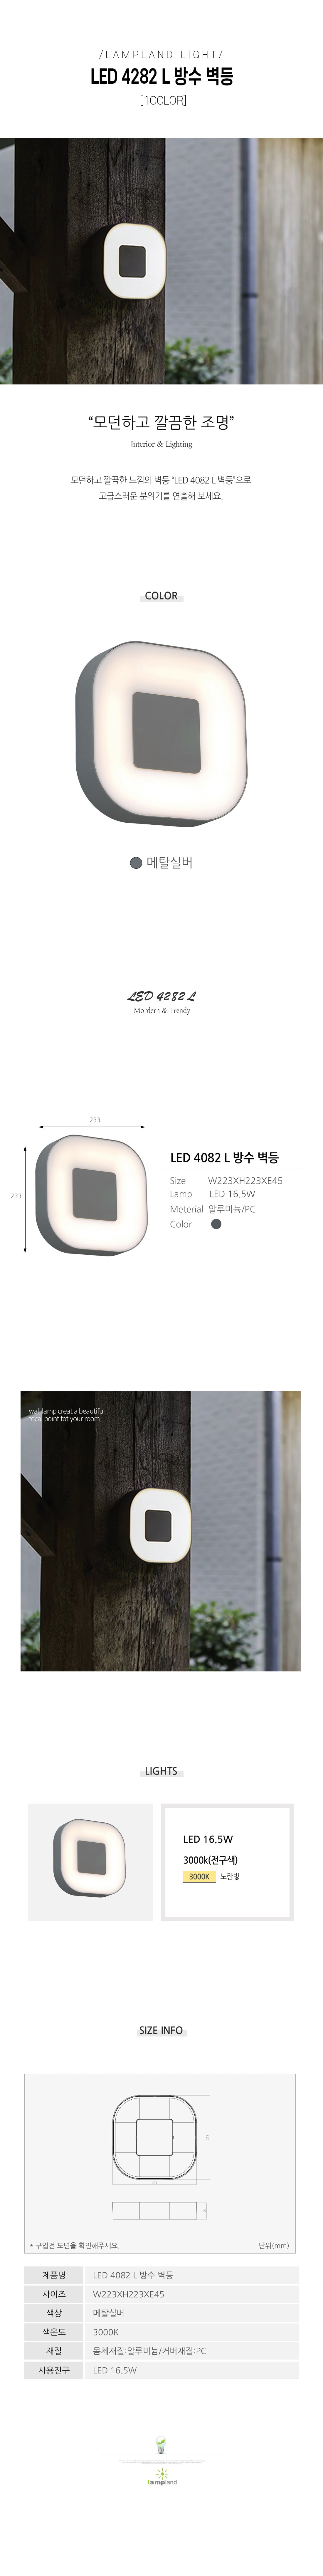 [LED 16.5W] LED 4082 L 방수벽등